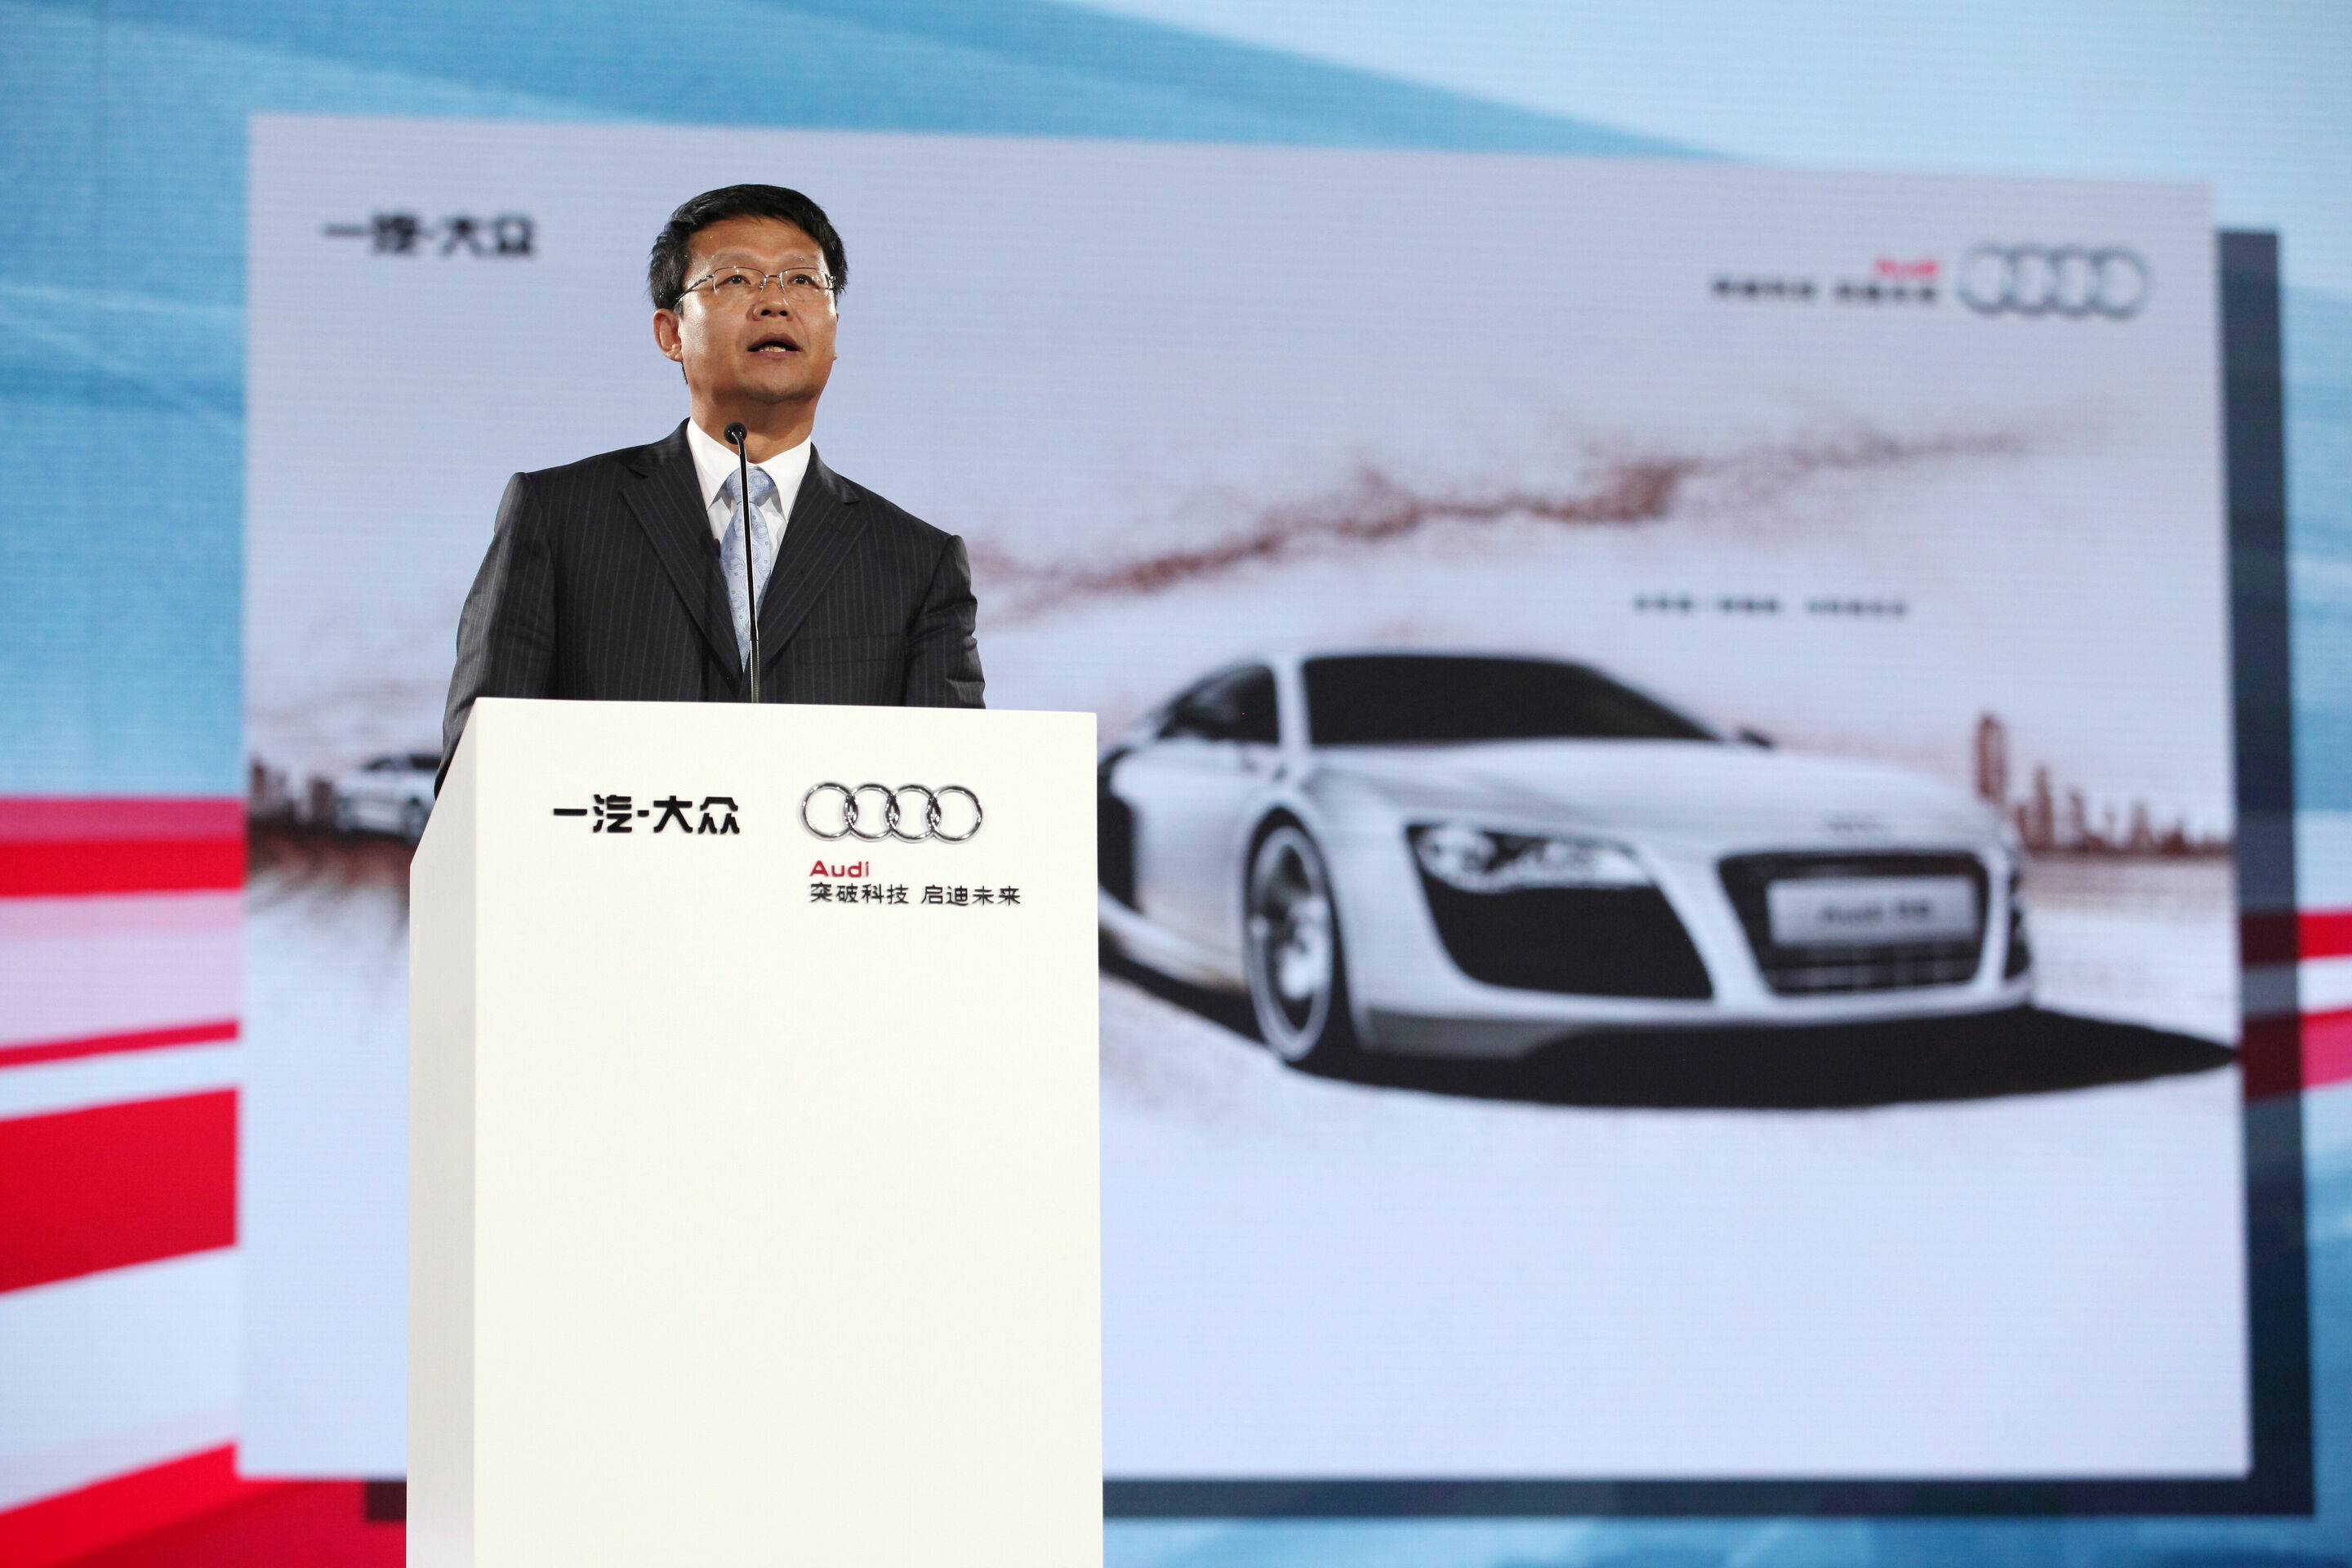 Audi feiert das 25-jährige Bestehen der Partnerschaft mit First Automotive Works (FAW). Gleichzeitig liefert Audi heute das zweimillionste Automobil in China an einen Kunden aus, einen lokal produzierten Audi A6 L. Beide Unternehmen kündigen an, gemeinsam an einem Plug-in-Hybrid-Projekt zu arbeiten.